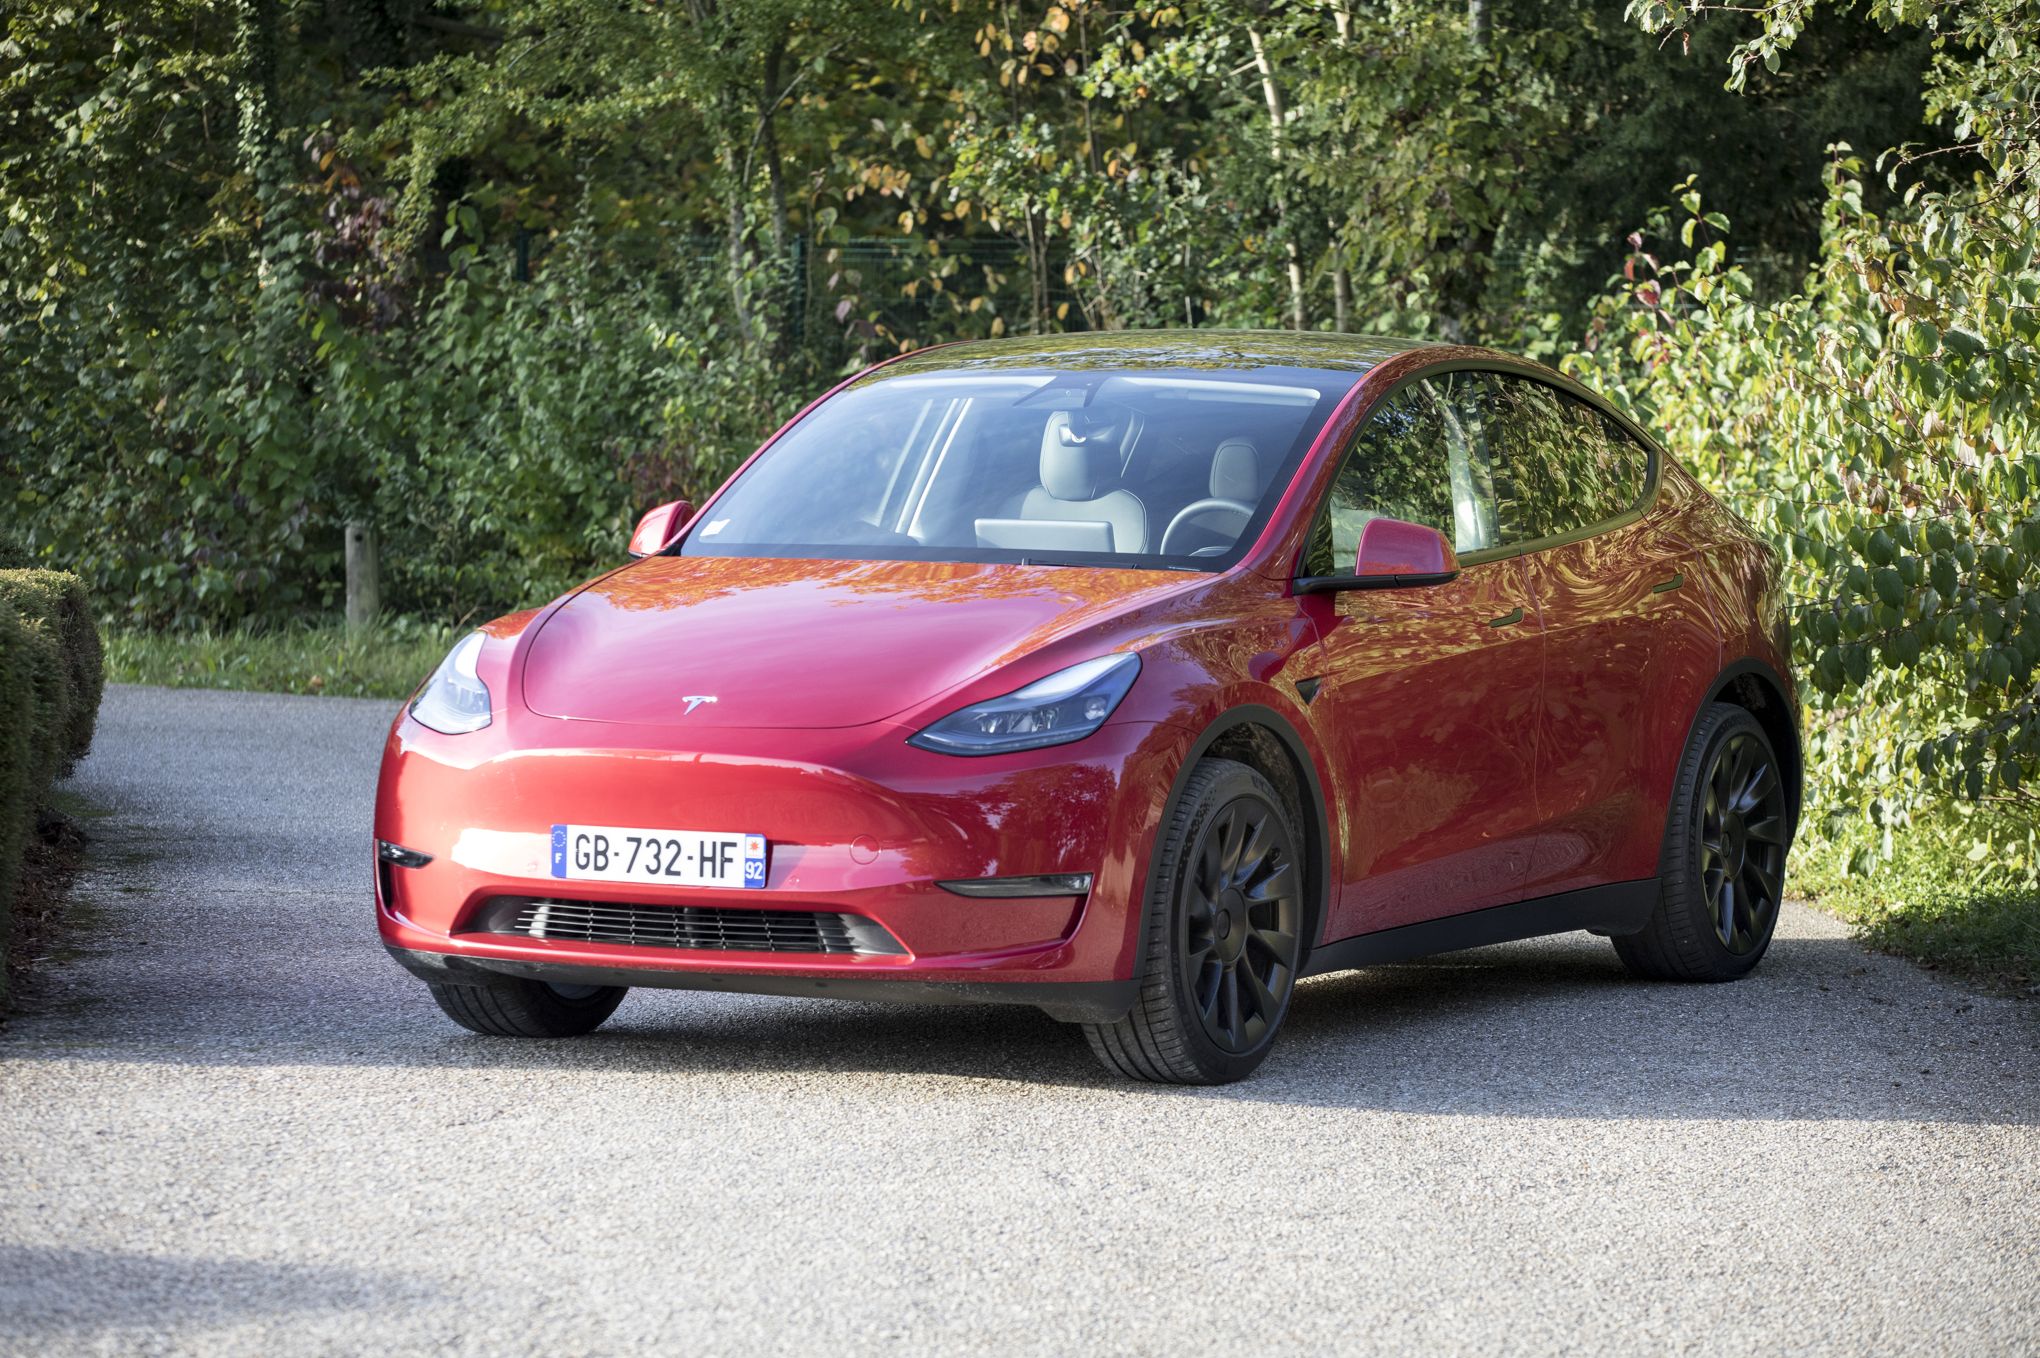 Le Model Y est la voiture la plus vendue dans le monde en 2023 : l'heure de  gloire pour Tesla ?